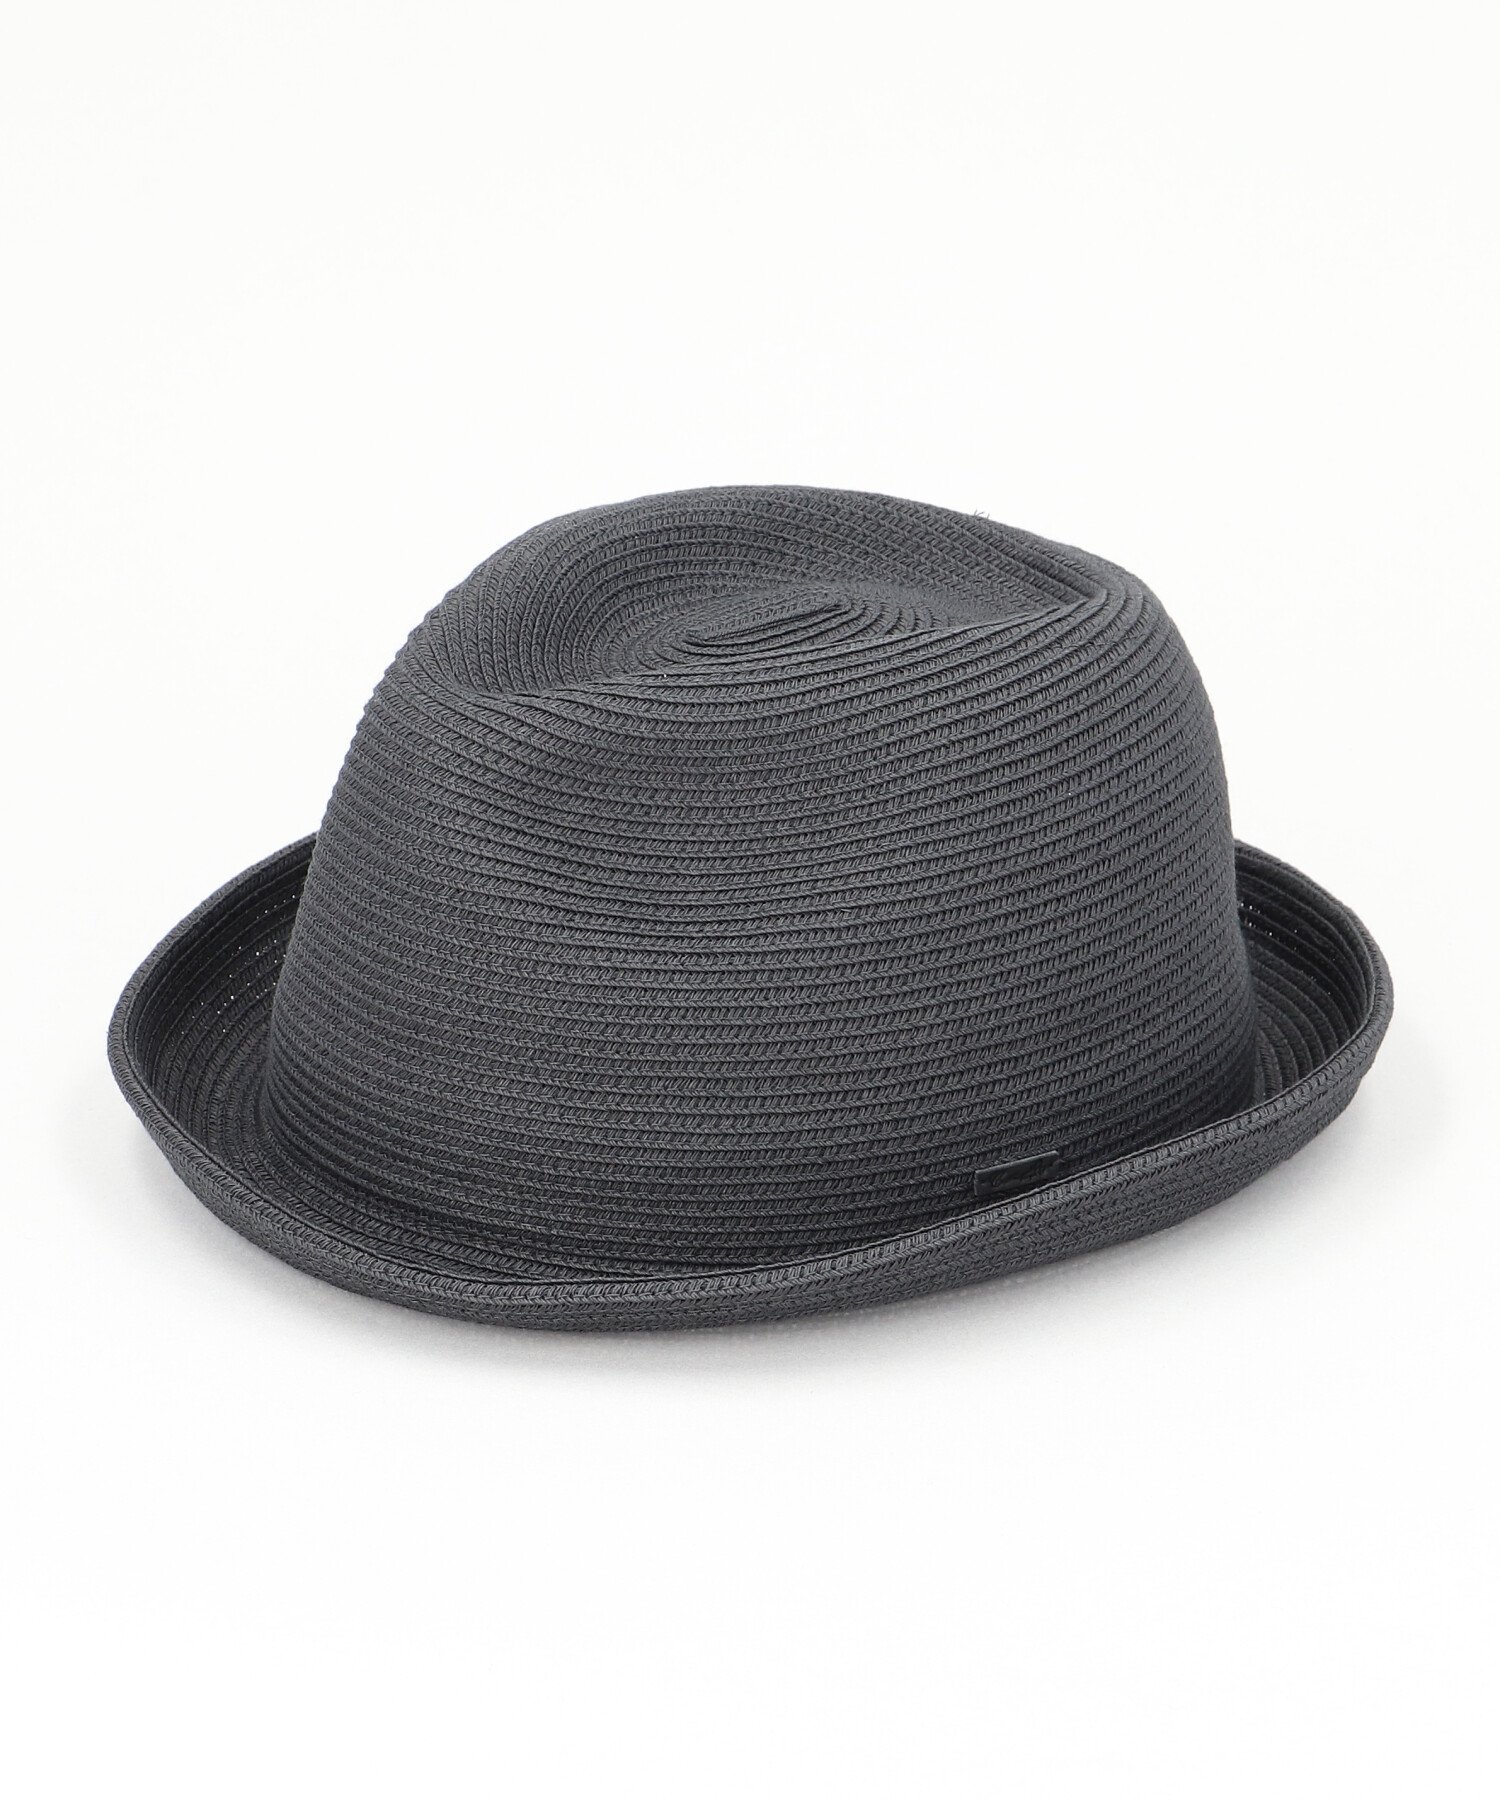 CA4LA WASHABLE BRAID HAT SB6 カシラ 帽子 ハット ブラック ベージュ グレー【送料無料】